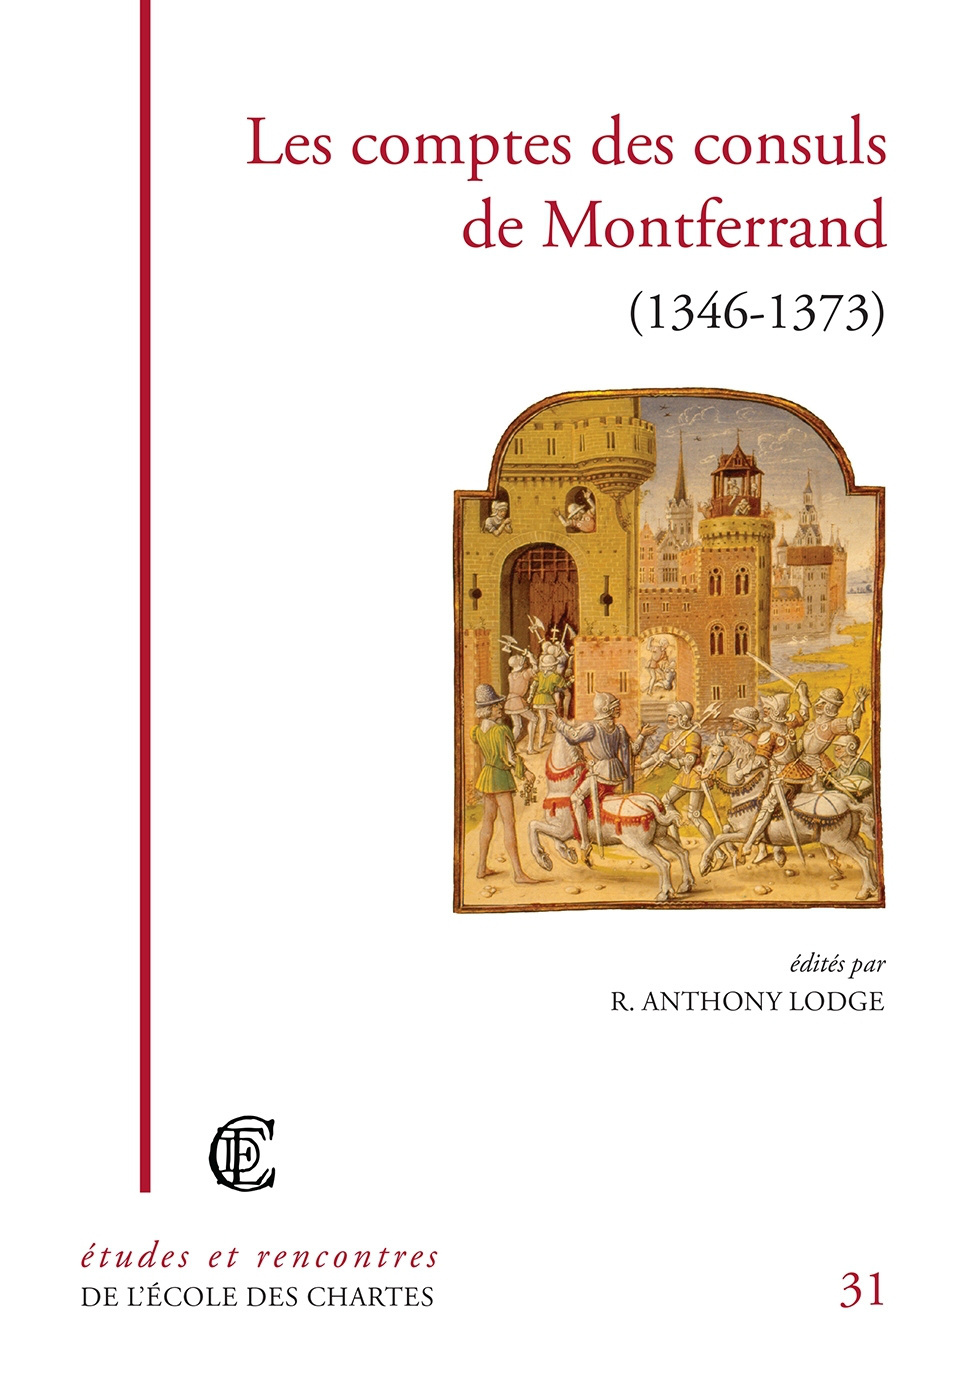 Couverture de "Les comptes des consuls de Montferrand (1346-1373)" © Énc